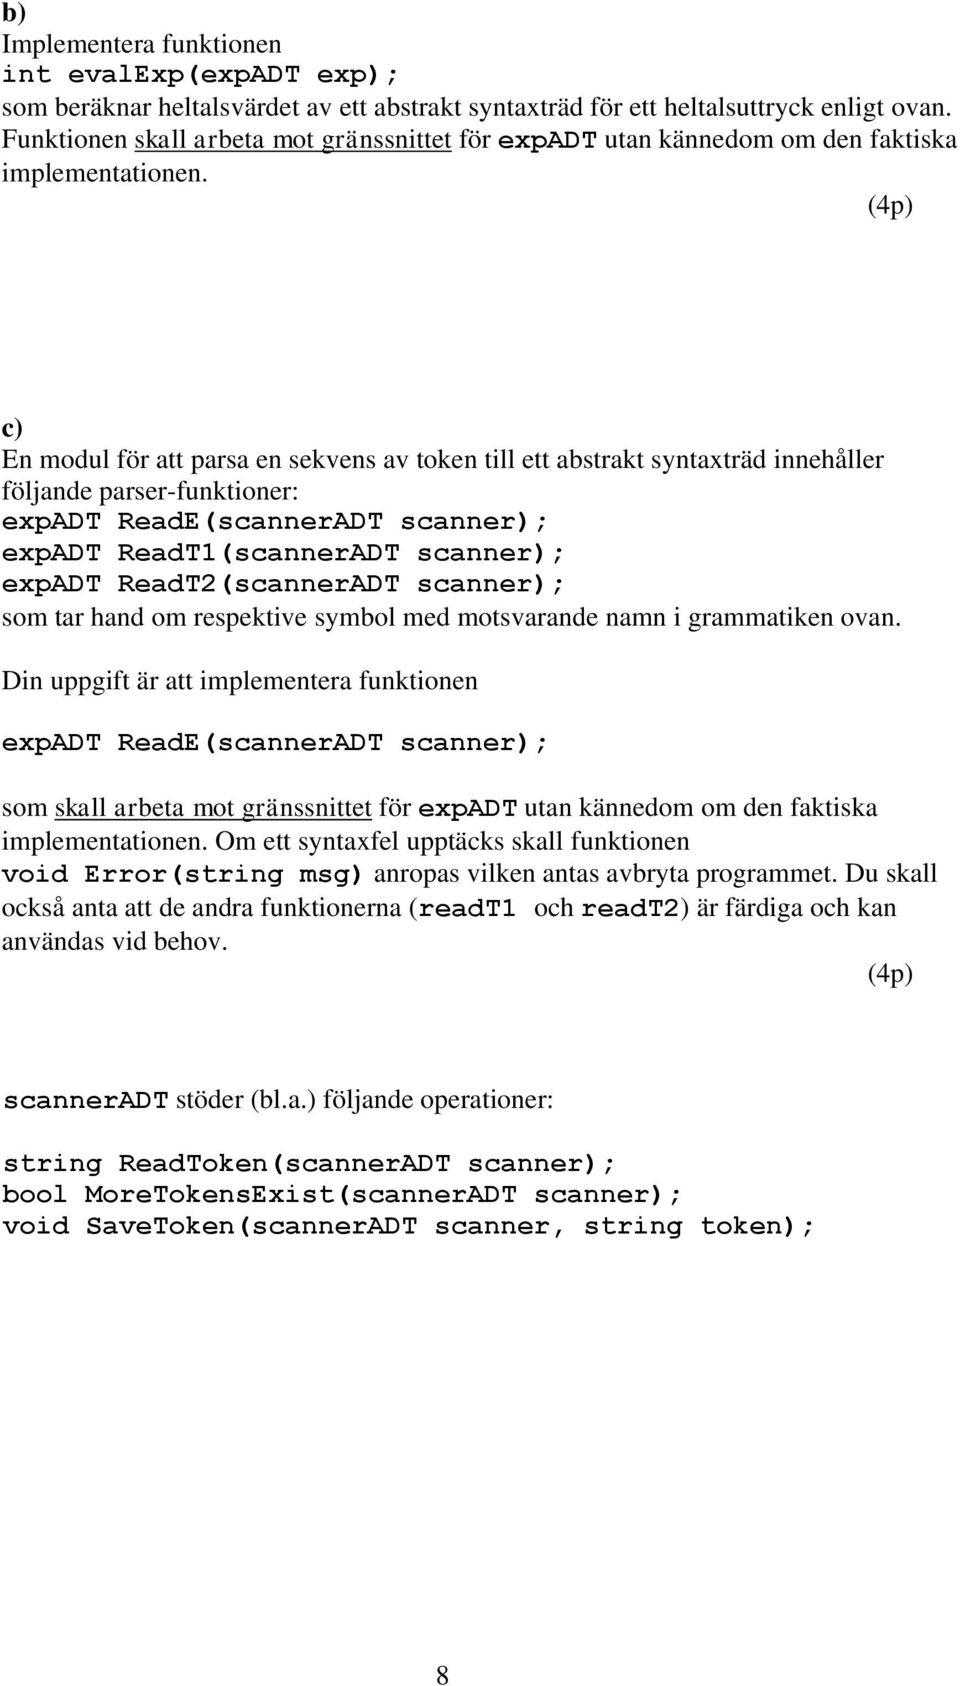 (4p) c) En modul för att parsa en sekvens av token till ett abstrakt syntaxträd innehåller följande parser-funktioner: expadt ReadE(scannerADT scanner); expadt ReadT1(scannerADT scanner); expadt